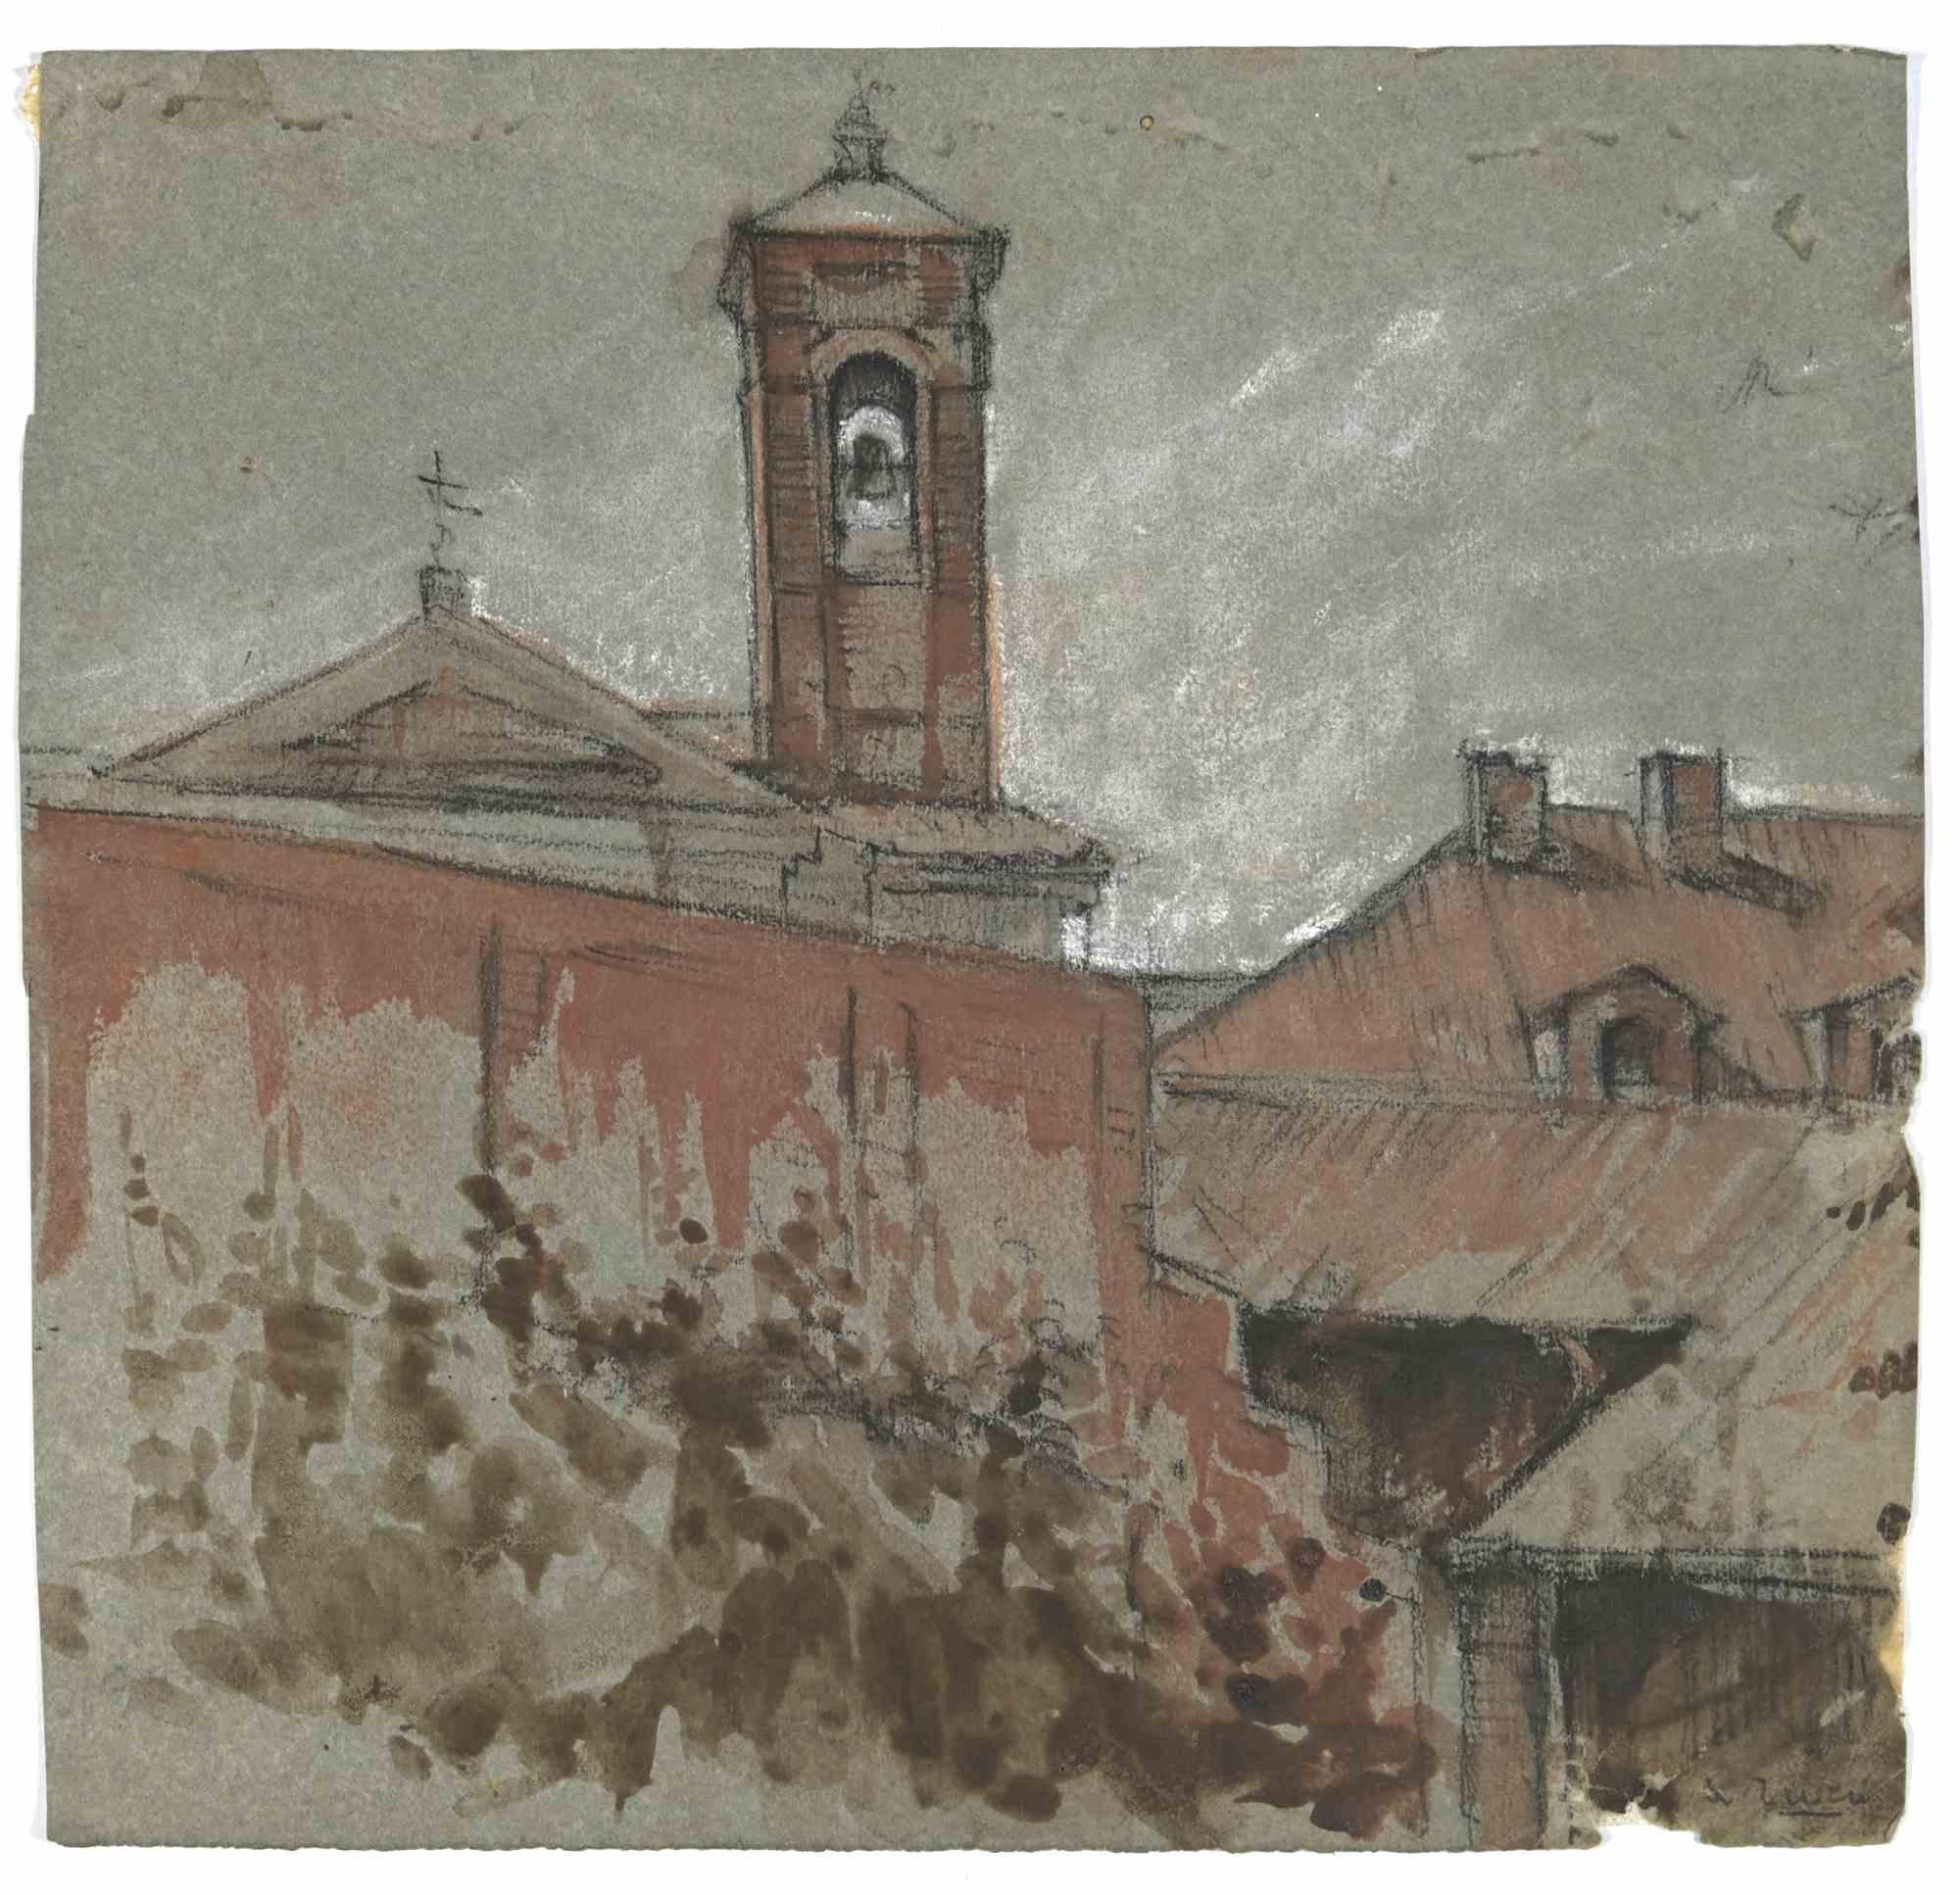 Church Bell ist eine Zeichnung von Alberto Ziveri aus den 1930er Jahren.

Aquarell auf Papier.

Handsigniert.

In gutem Zustand.